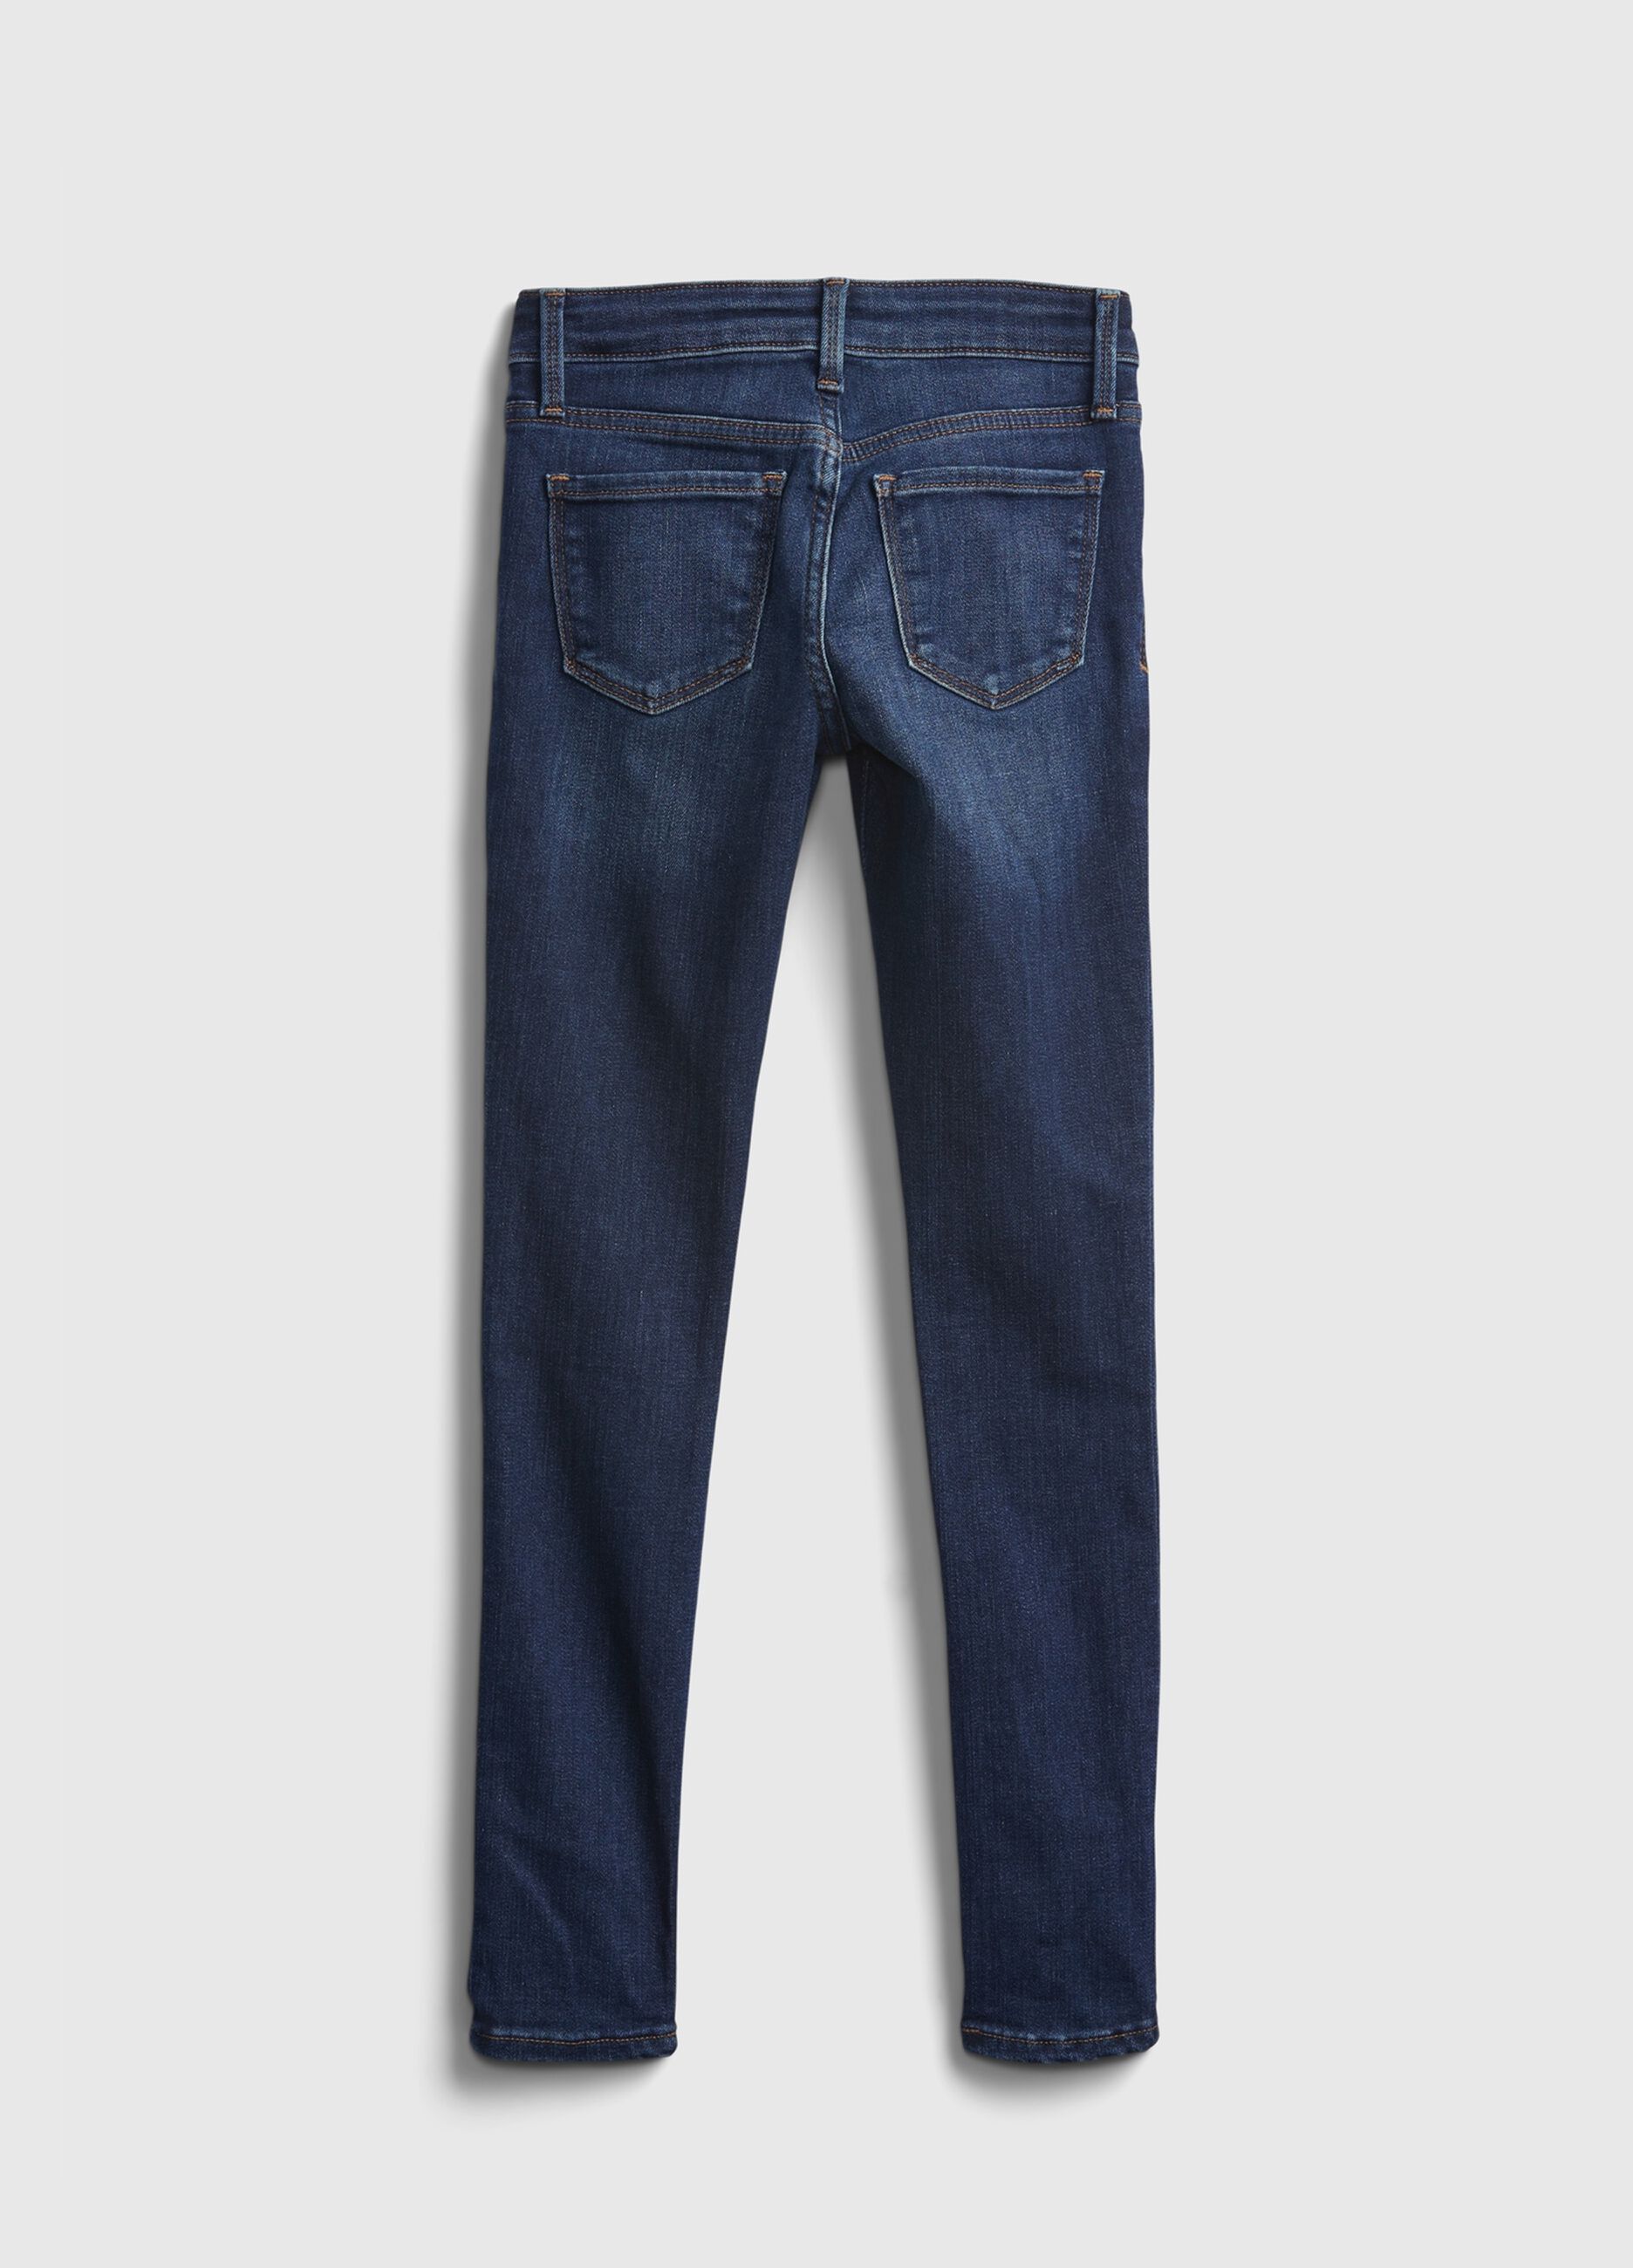 5-pocket, super-skinny jeans